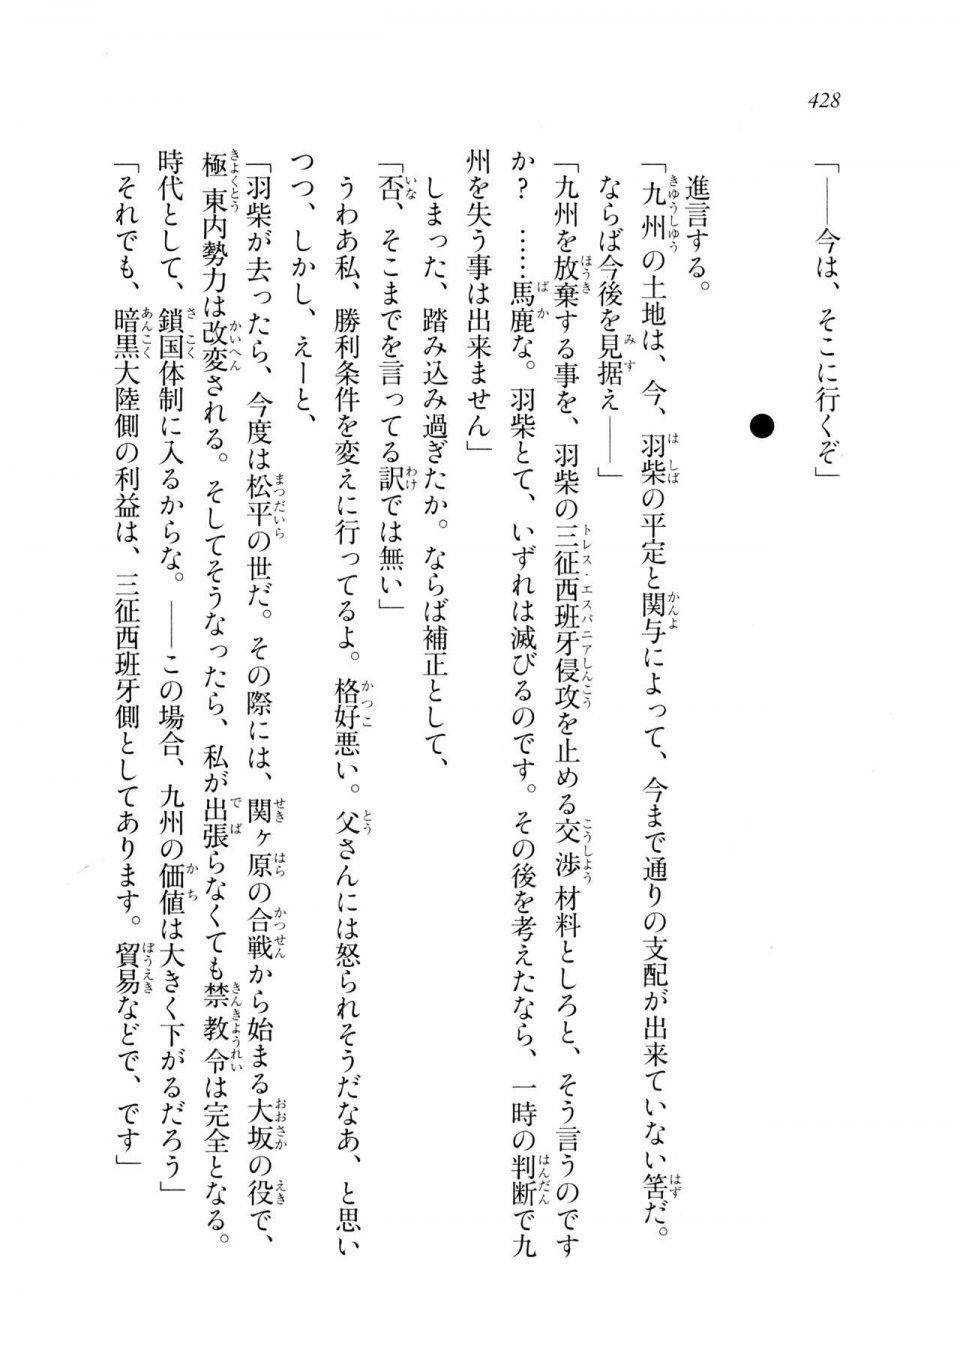 Kyoukai Senjou no Horizon LN Sidestory Vol 2 - Photo #426